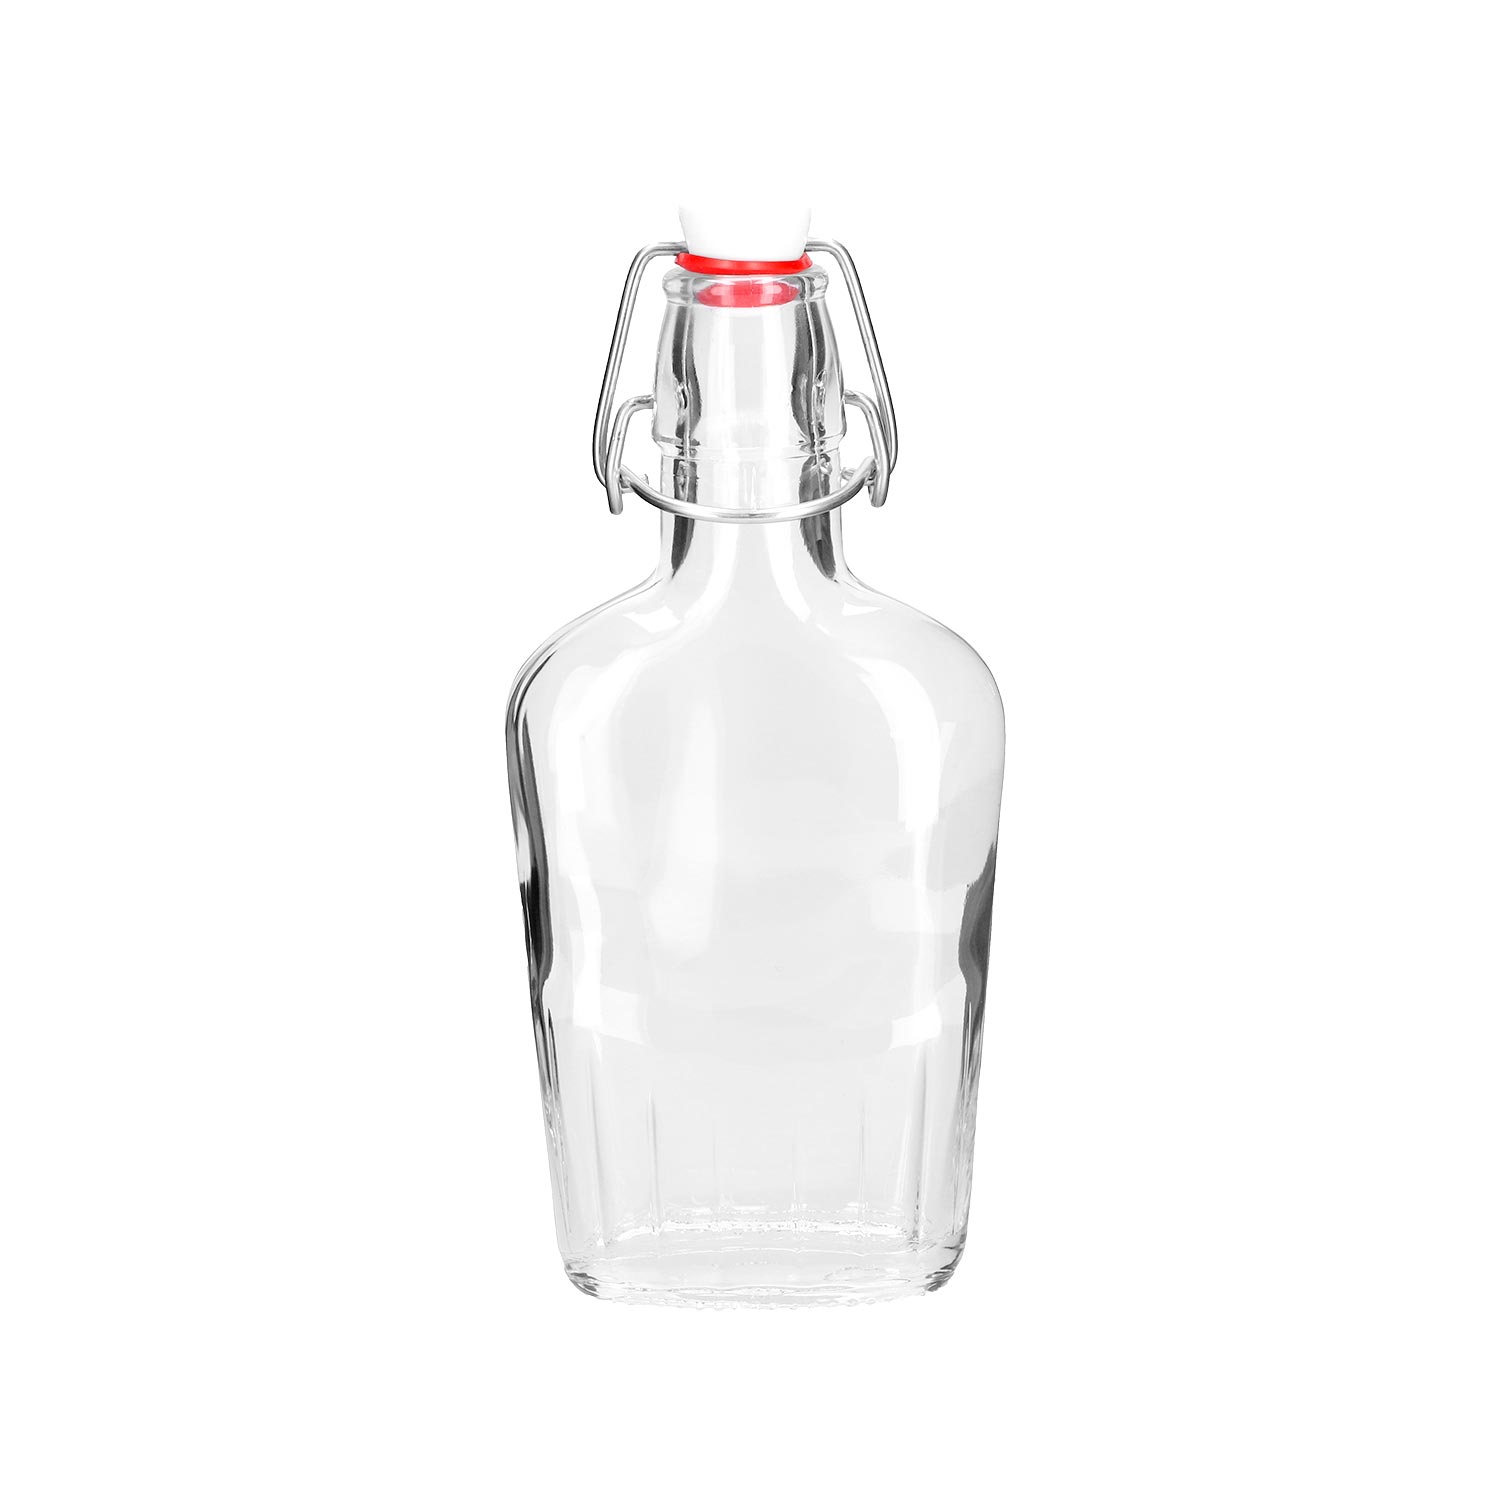 Flasche "Flaschetta" aus Glas, 250 ml, mit individueller Gravur